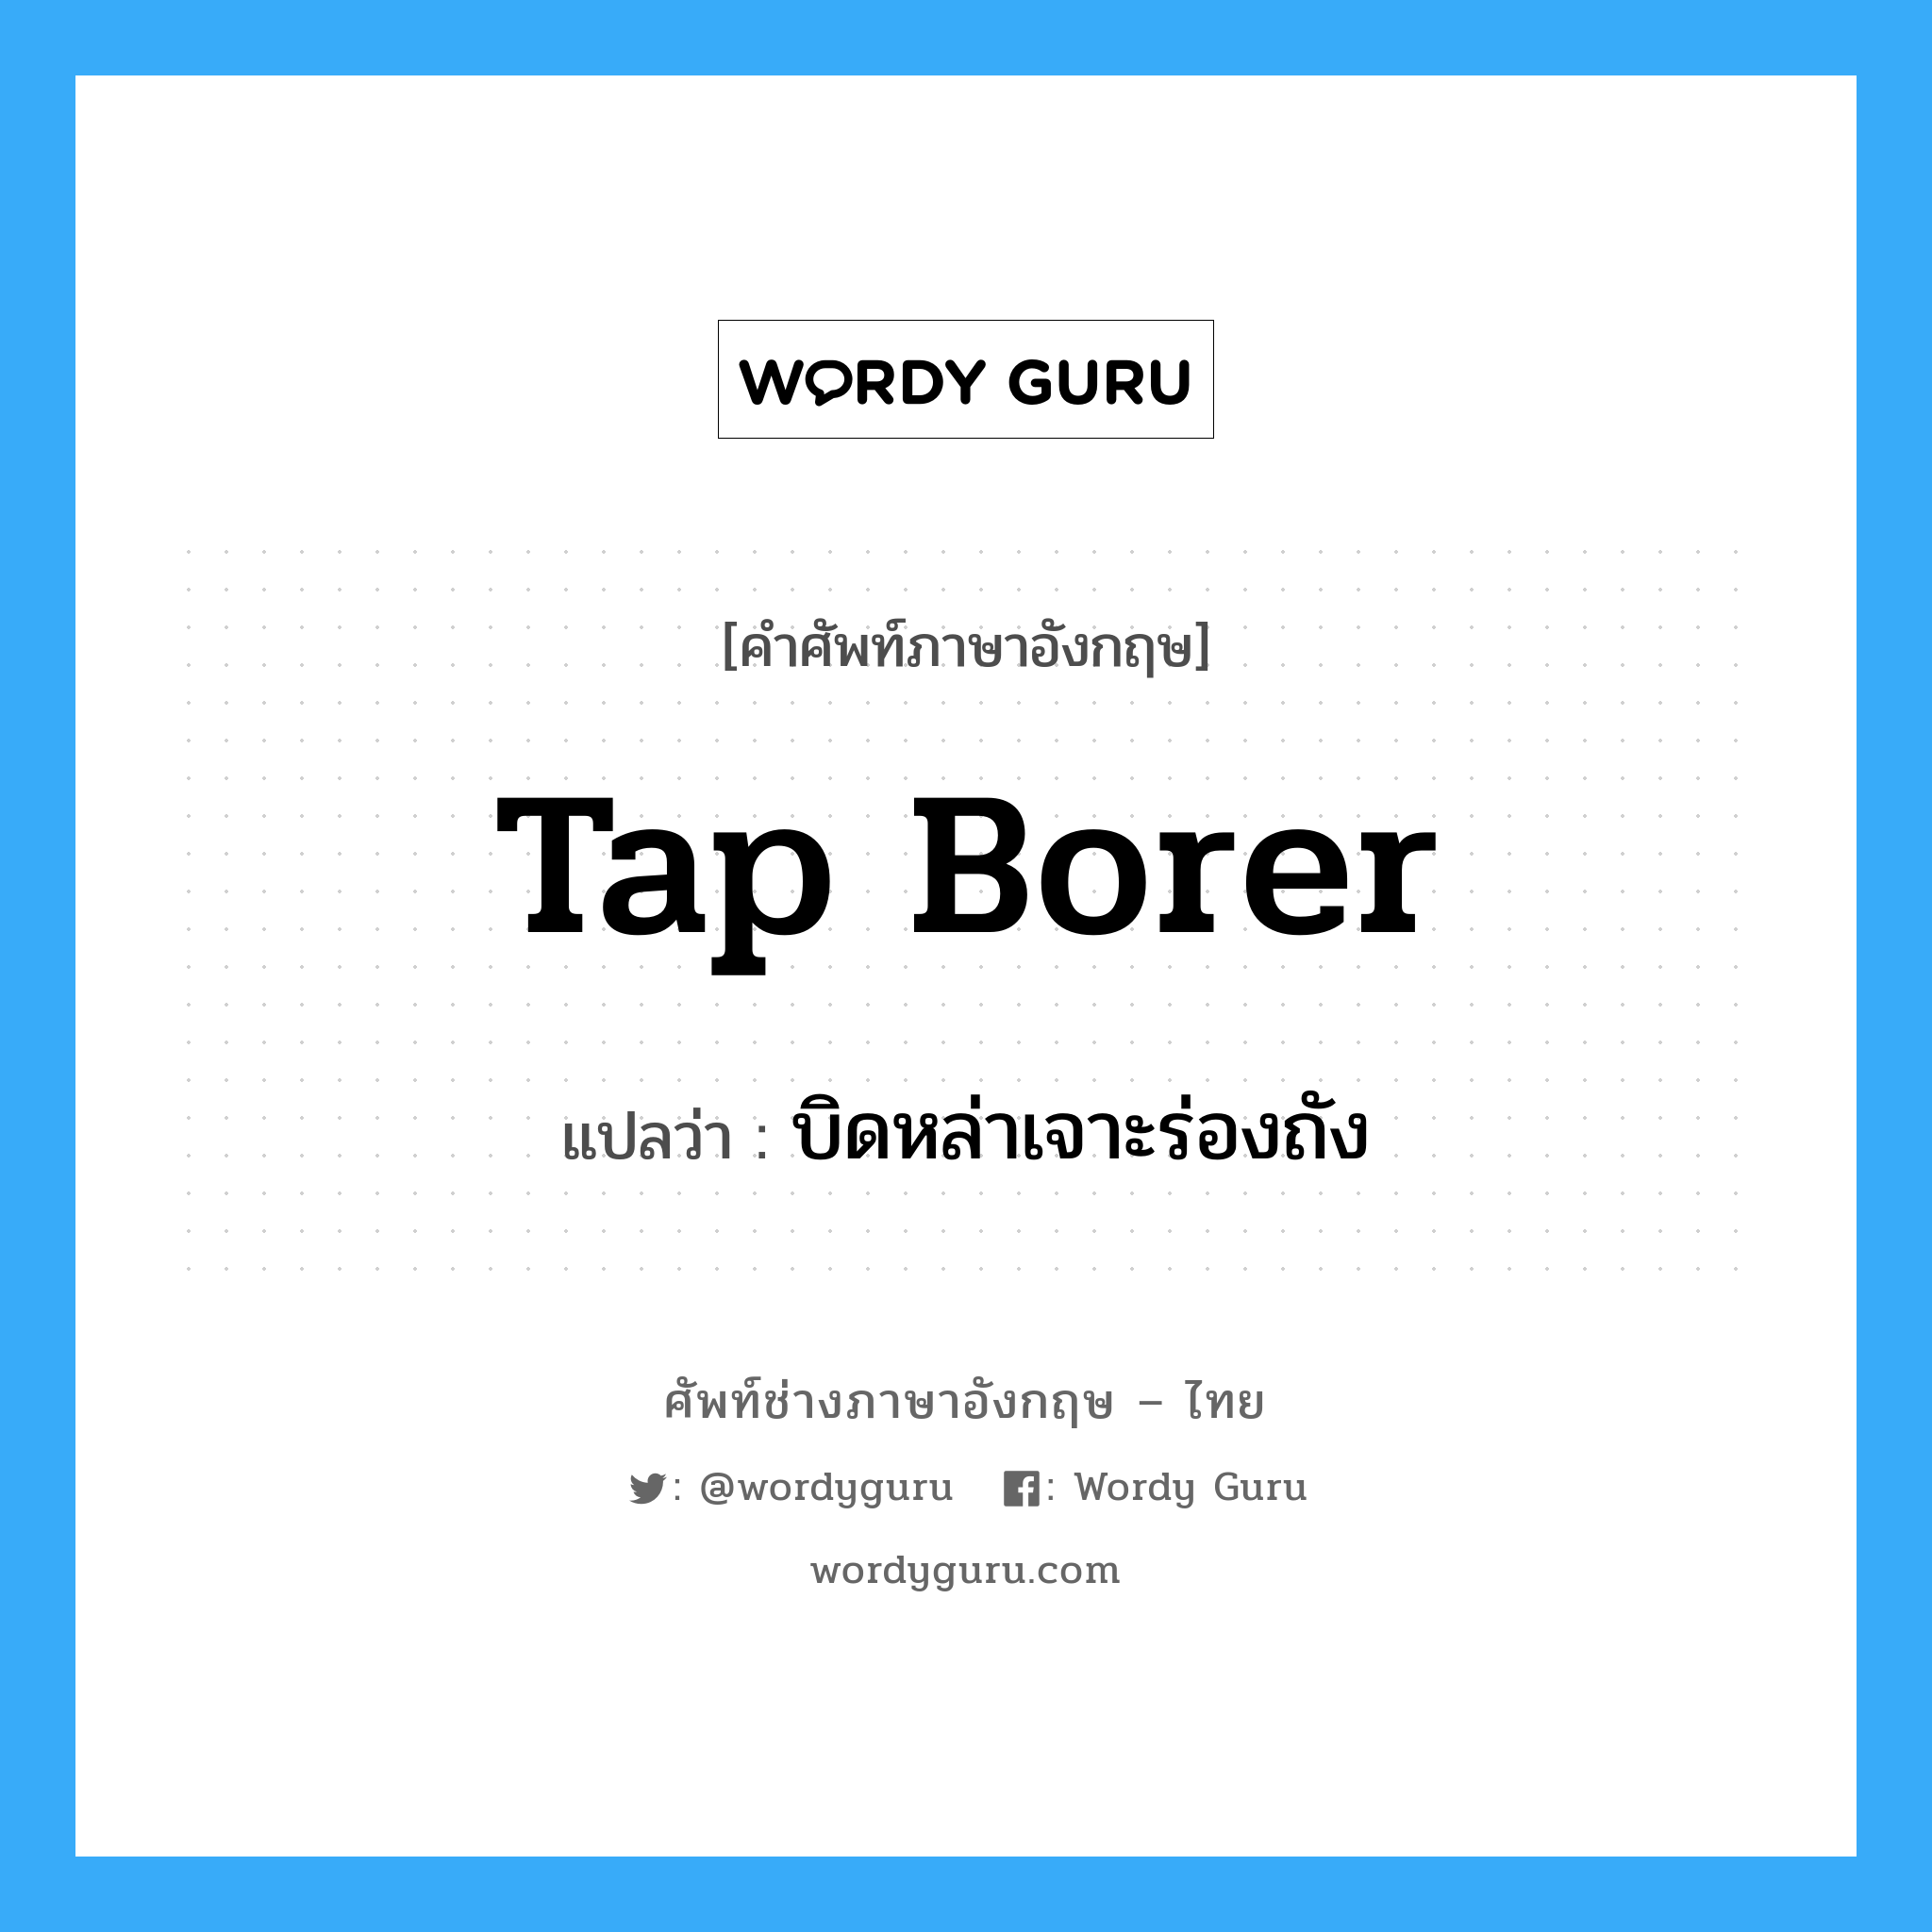 tap borer แปลว่า?, คำศัพท์ช่างภาษาอังกฤษ - ไทย tap borer คำศัพท์ภาษาอังกฤษ tap borer แปลว่า บิดหล่าเจาะร่องถัง